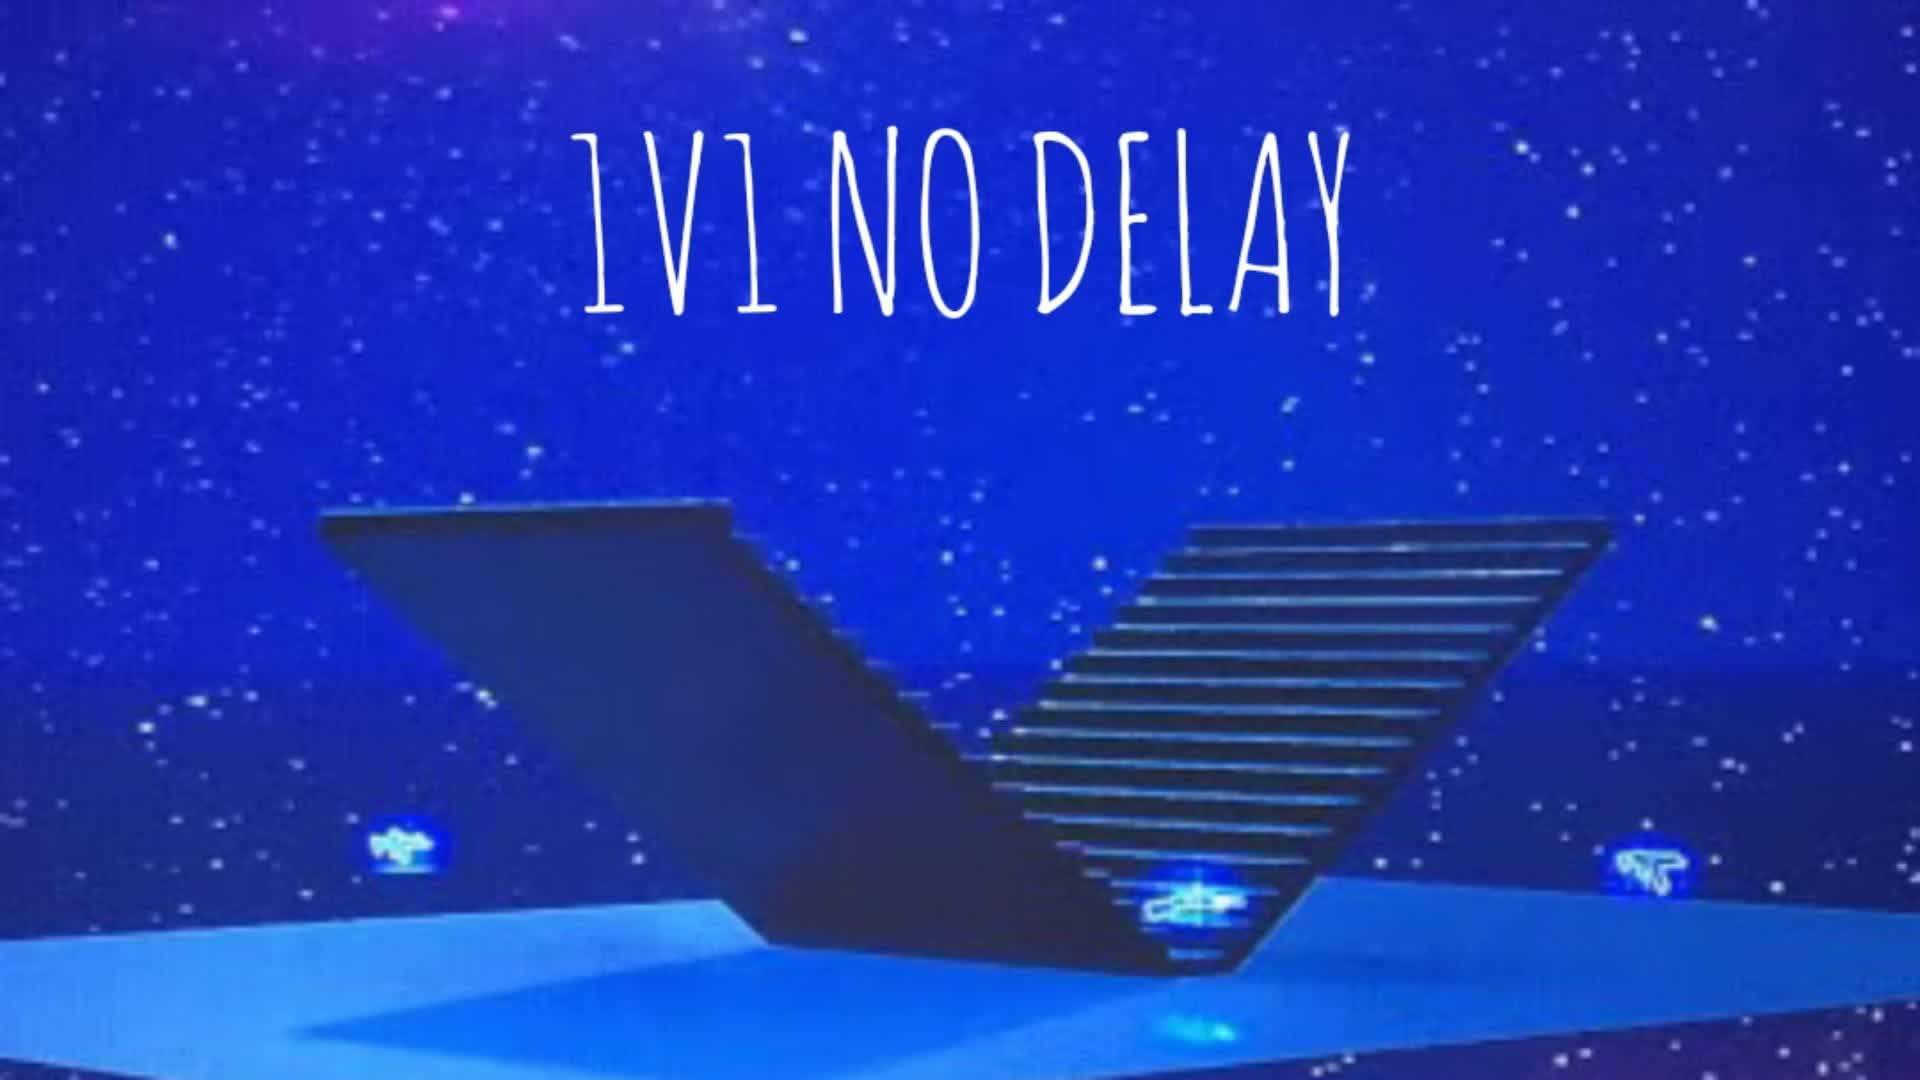 1V1 NO DELAY